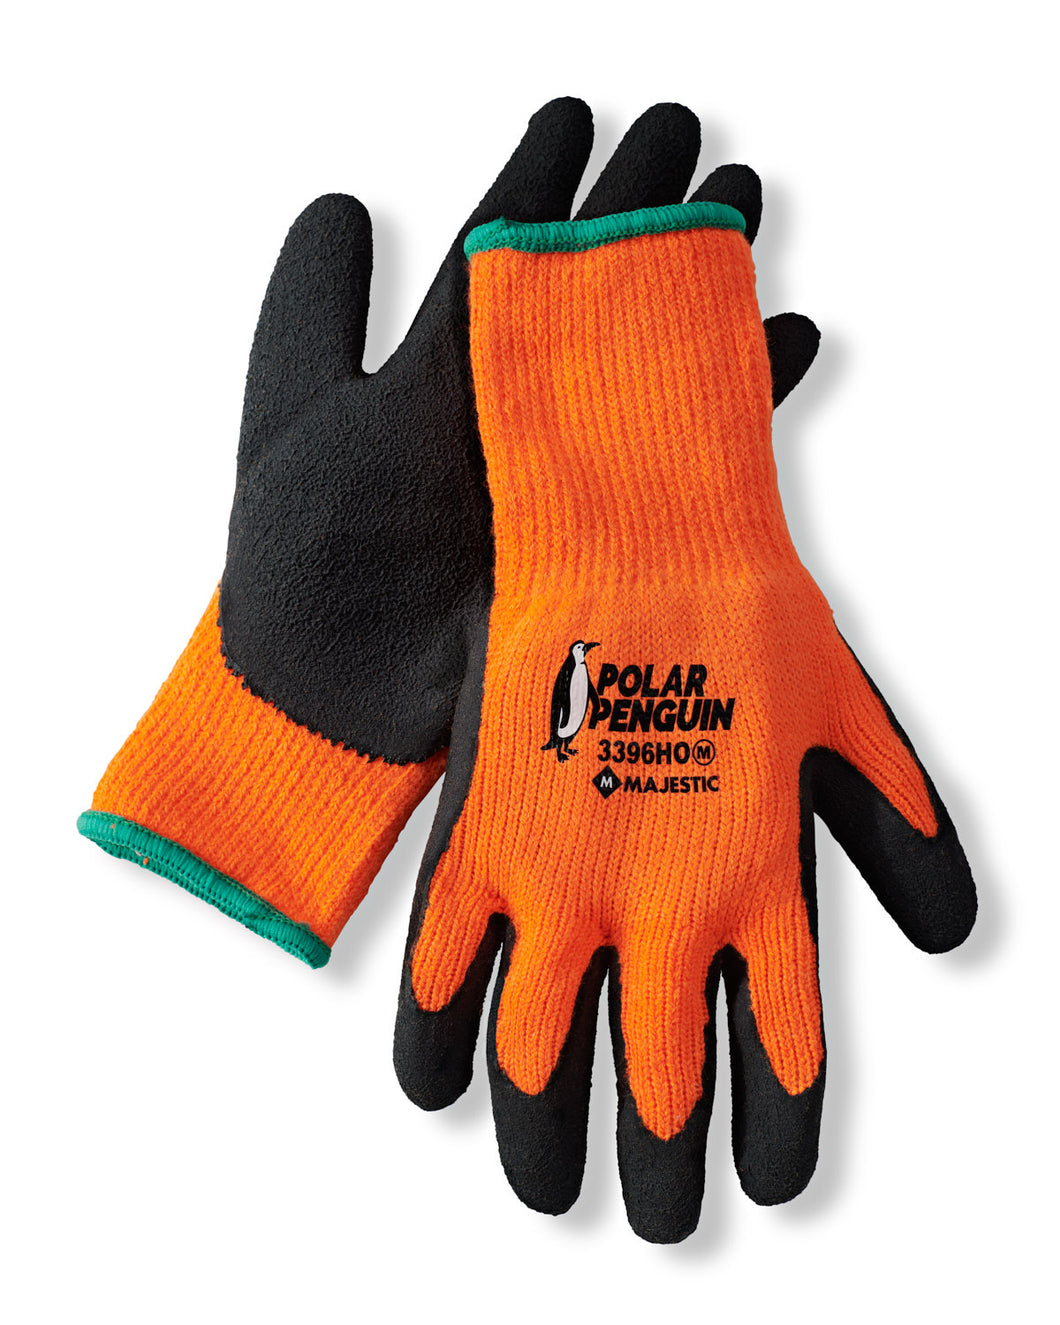 Polar Penguin Thermal Gloves Orange 12 Pair Pack